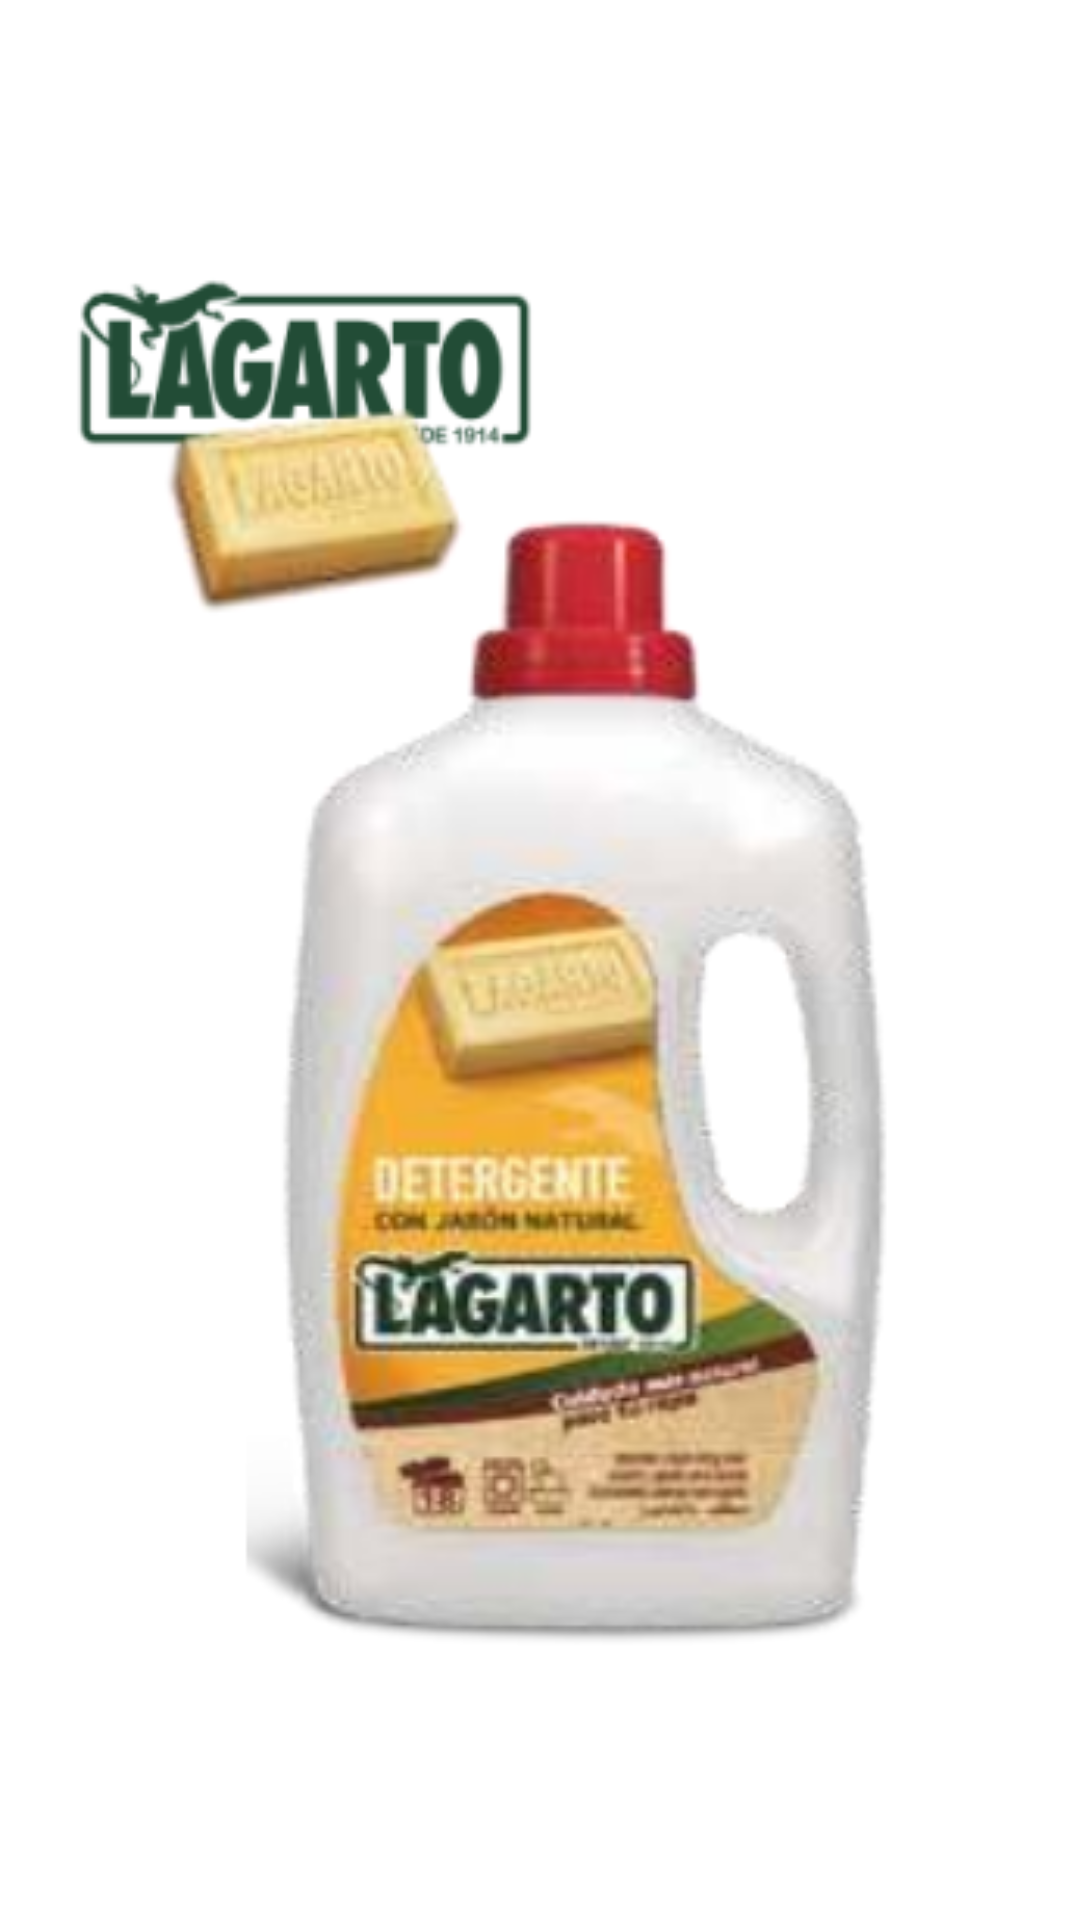 Detergente Lagarto al Jabón 18 lavados